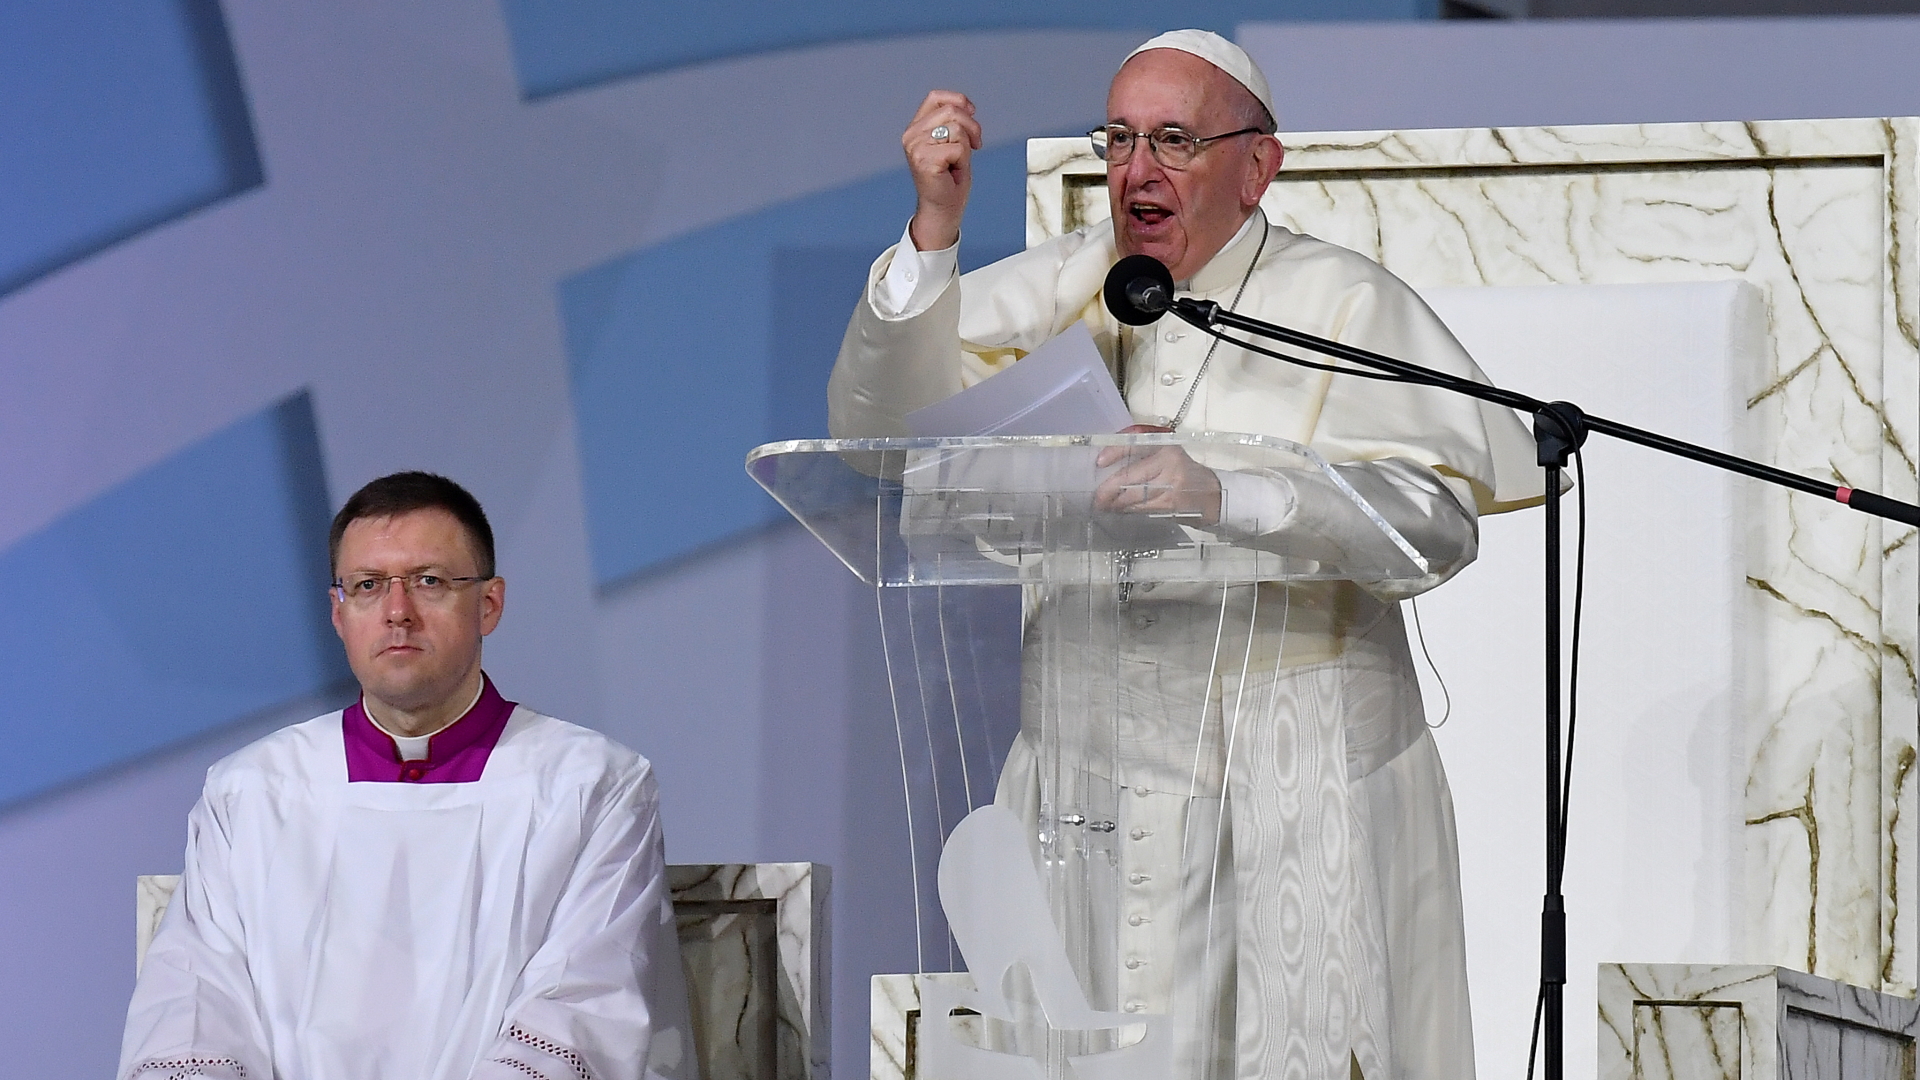 Papst Franziskus spricht bei einer Gebetswache auf dem Weltjugendtag in Panama-Stadt. | Bildquelle: ETTORE FERRARI/EPA-EFE/REX